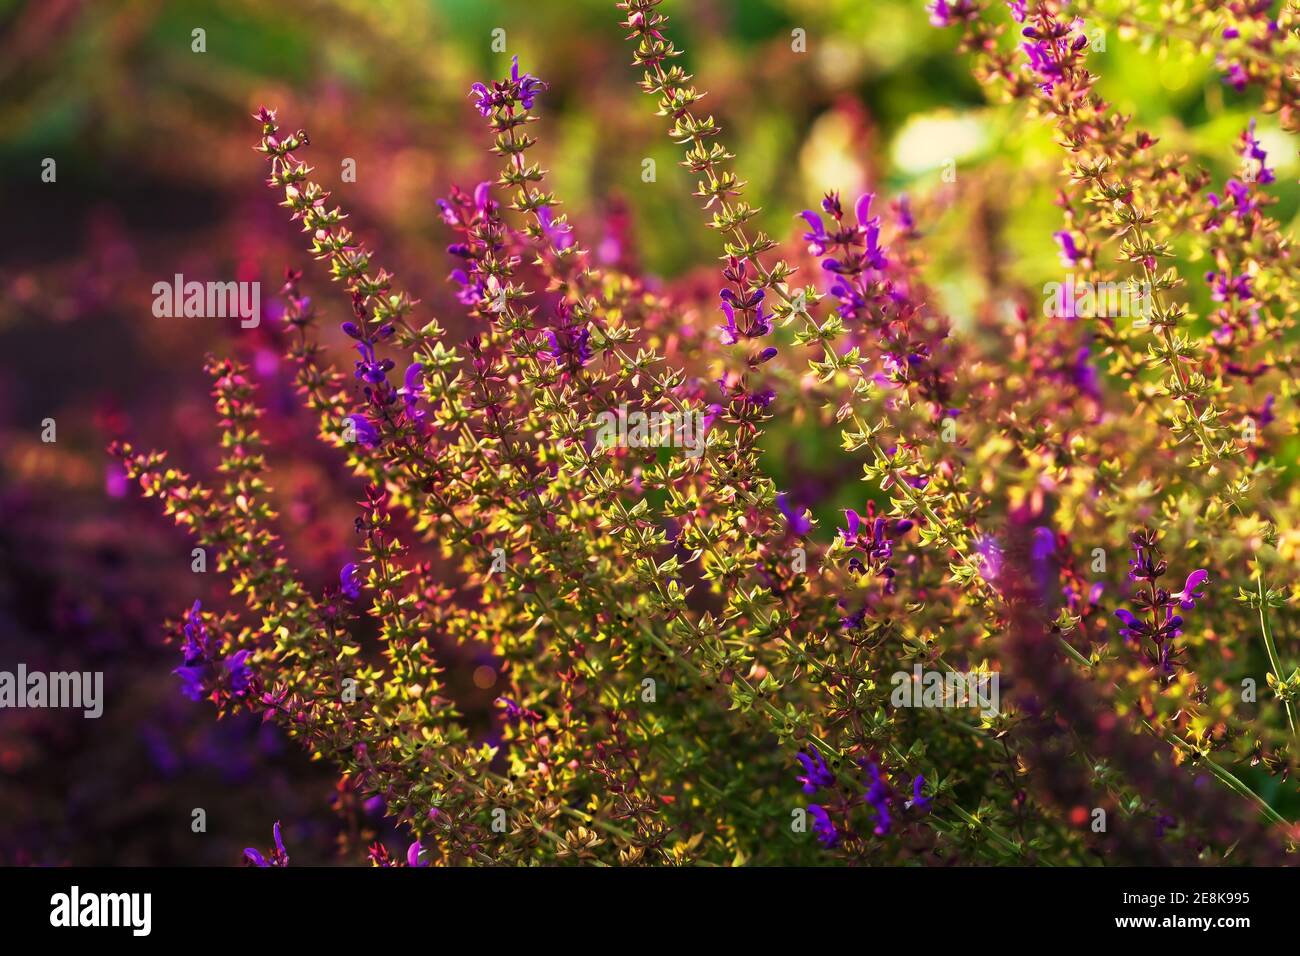 Purple sage salvia plants in sunset light on summer day in gardenn Stock Photo